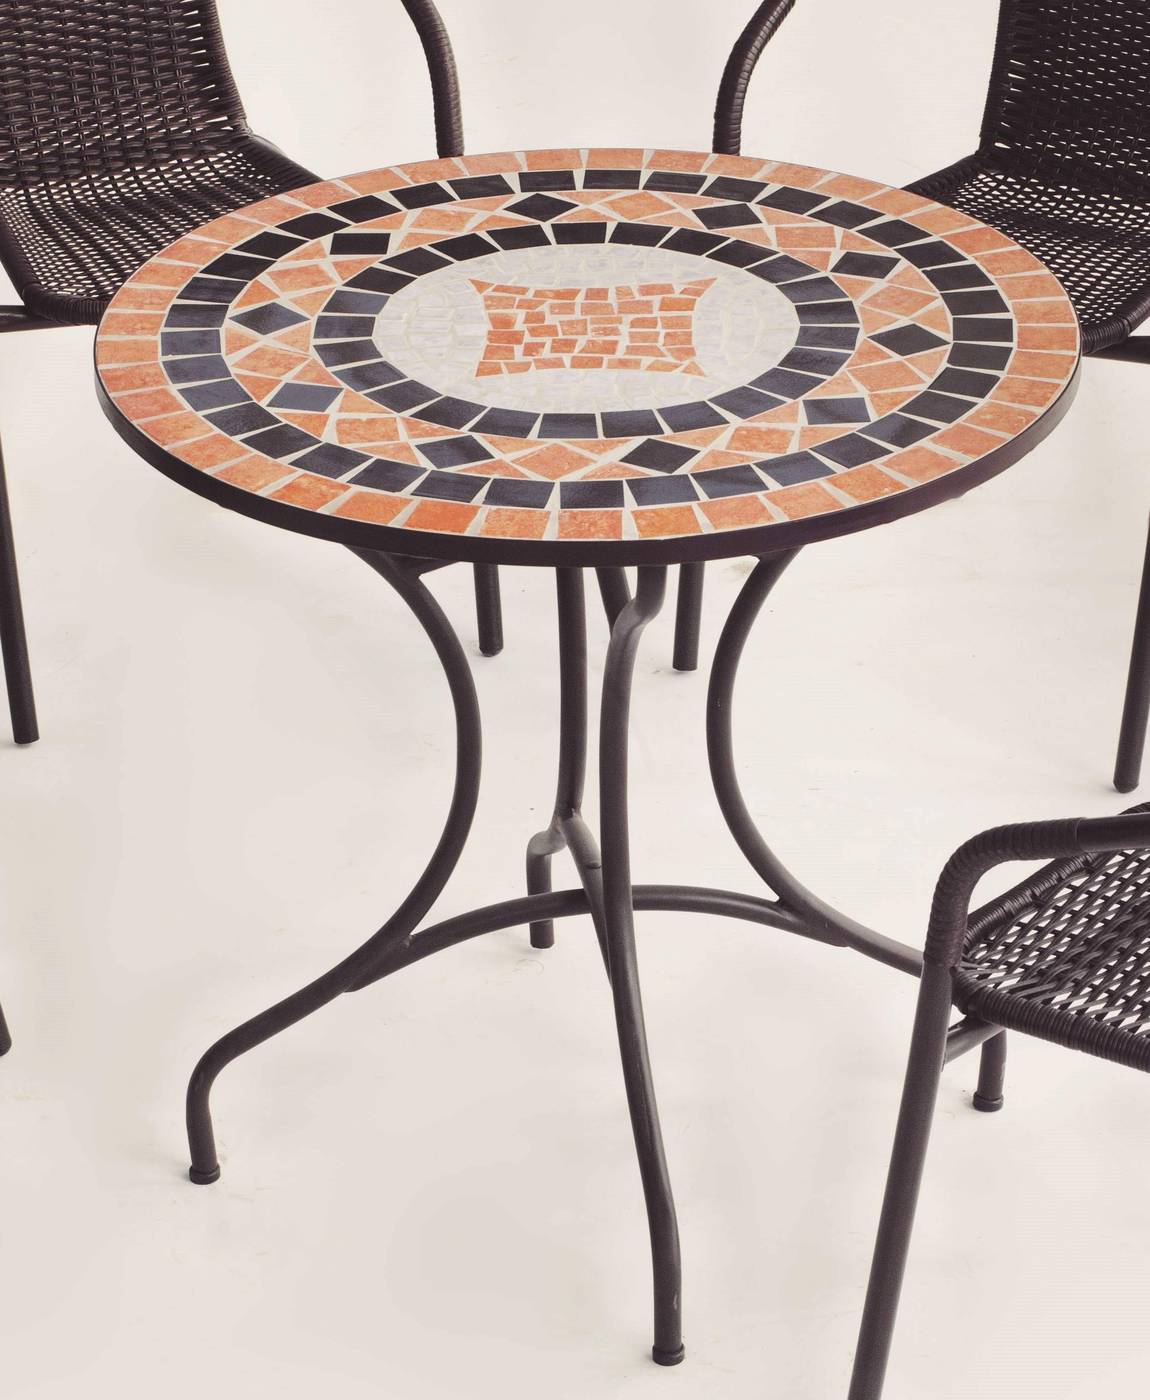 Conjunto Mosaico Soria75-Marsel - Mesa de forja color bronce, con tablero mosaico de 75 cm + 4 sillones apilables de aluminio con cojín.